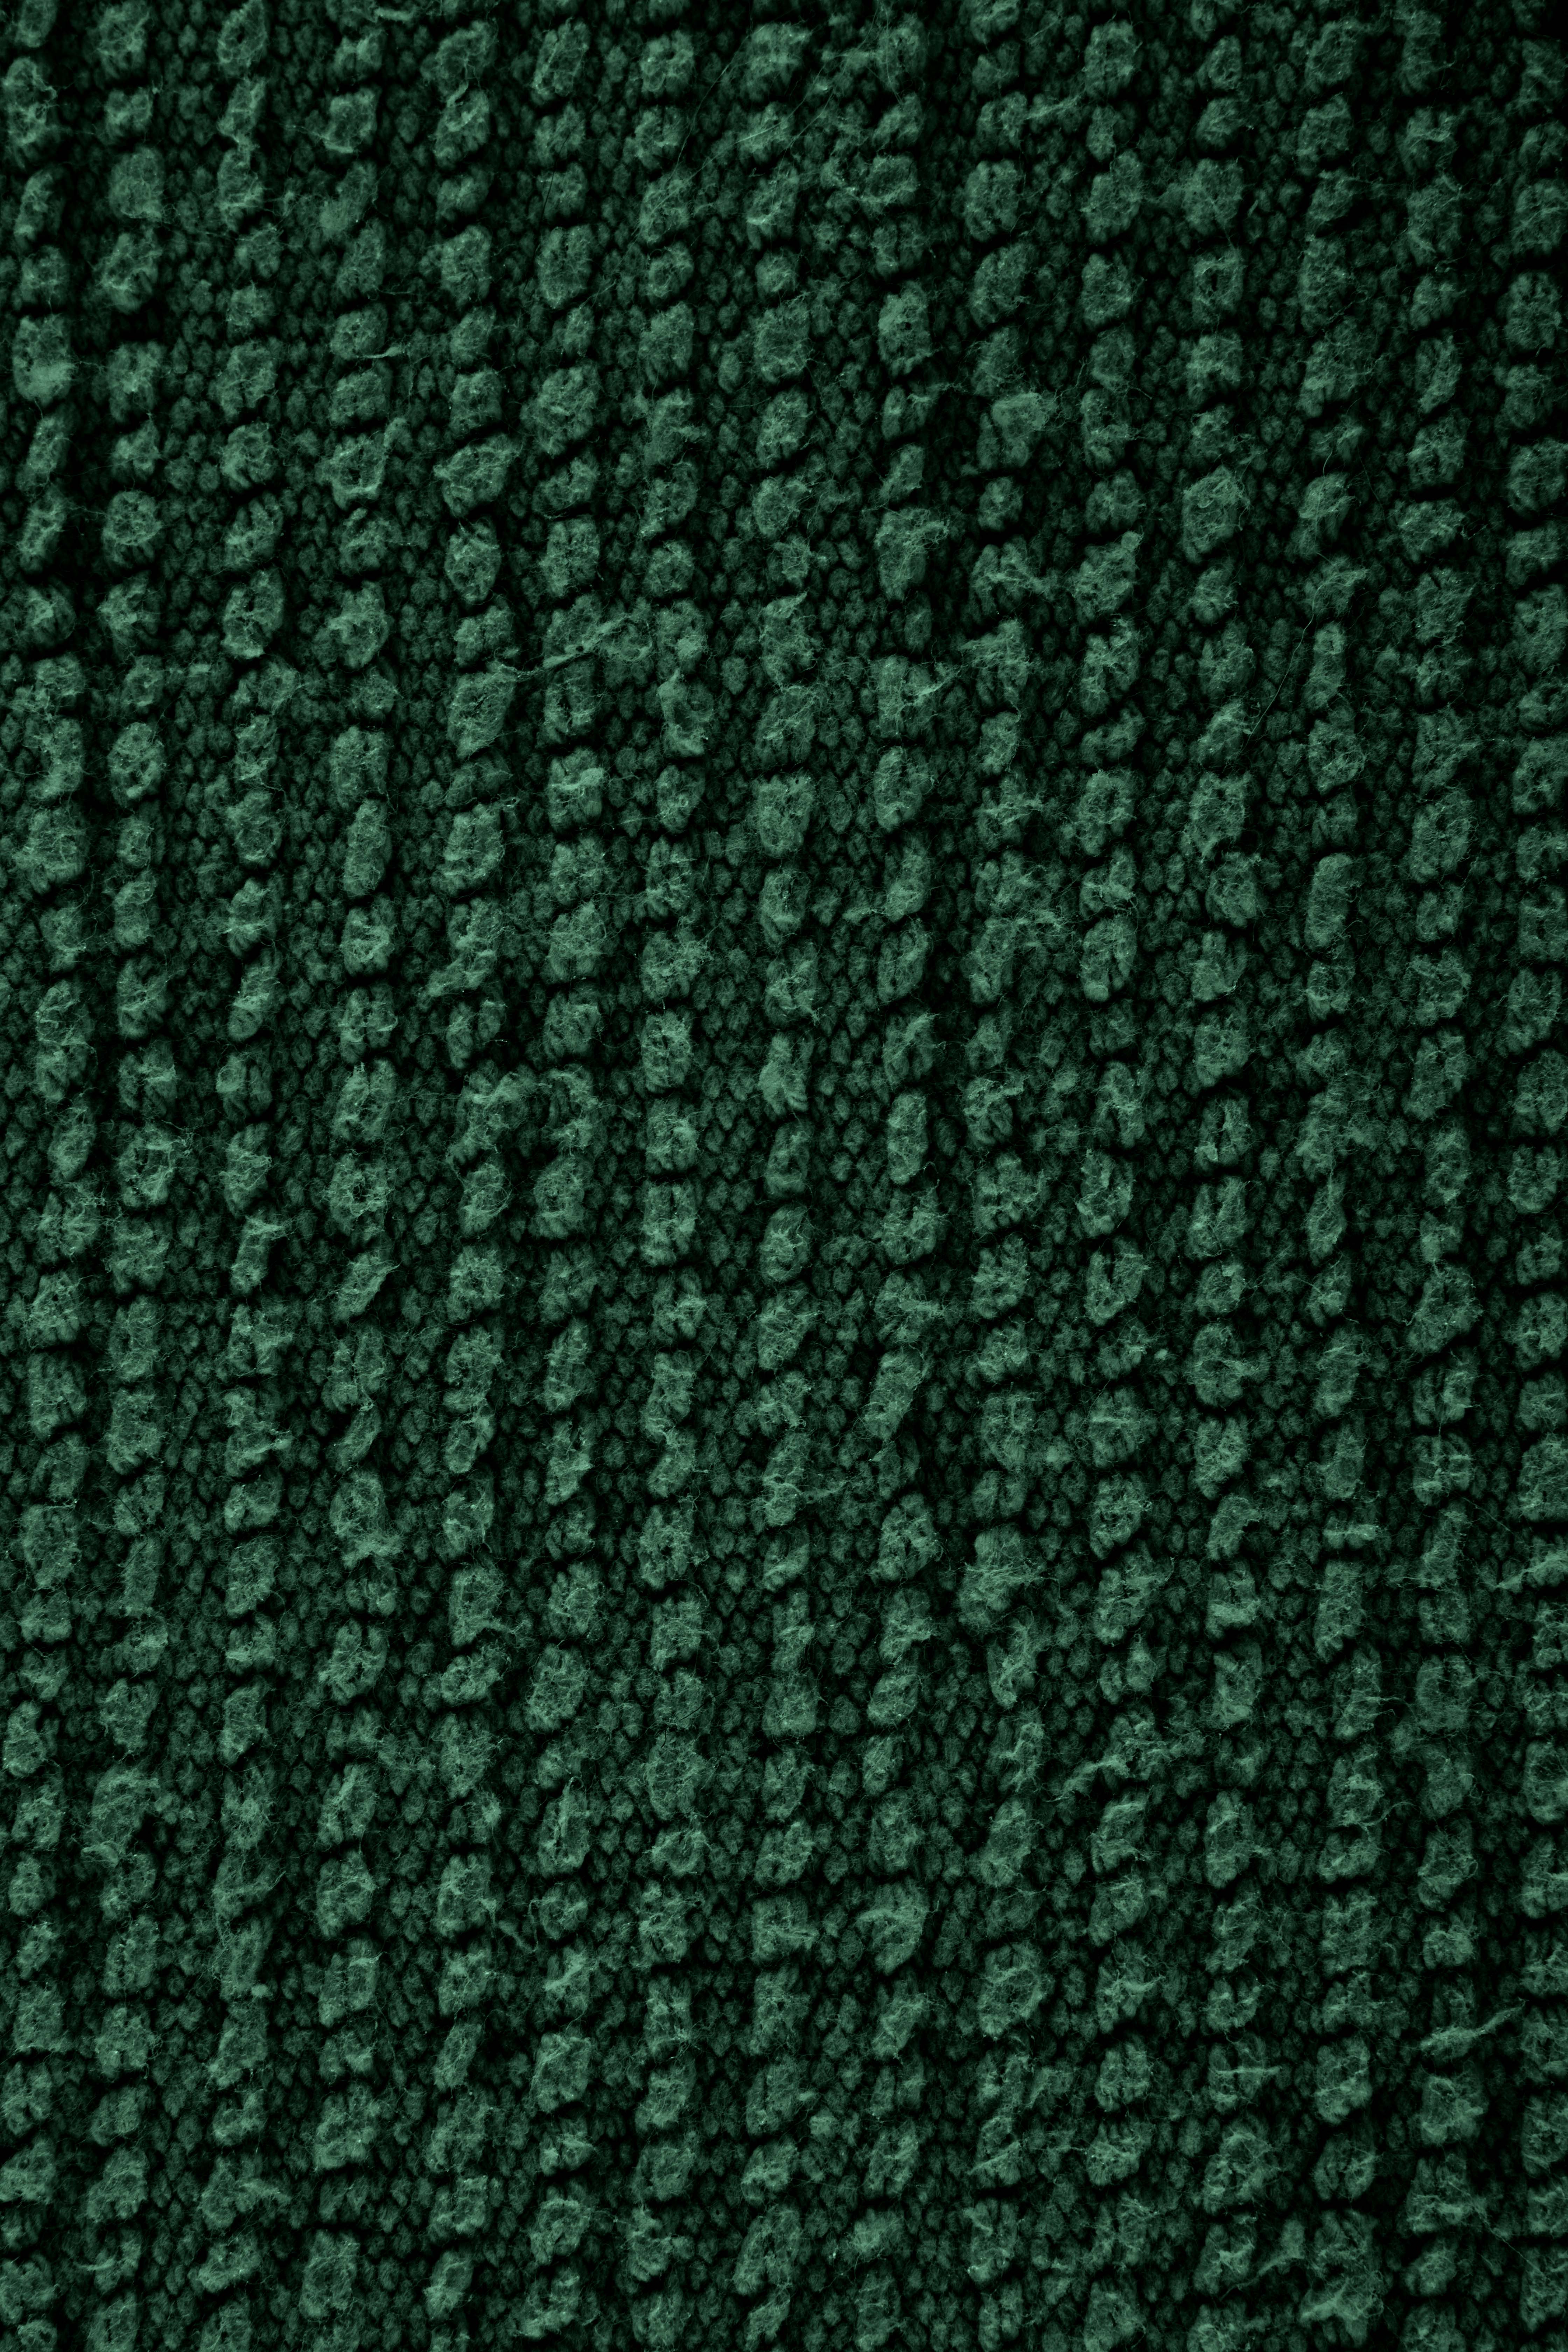 Badtapijt RIVA - katoen antislip, 60x100cm, dark green